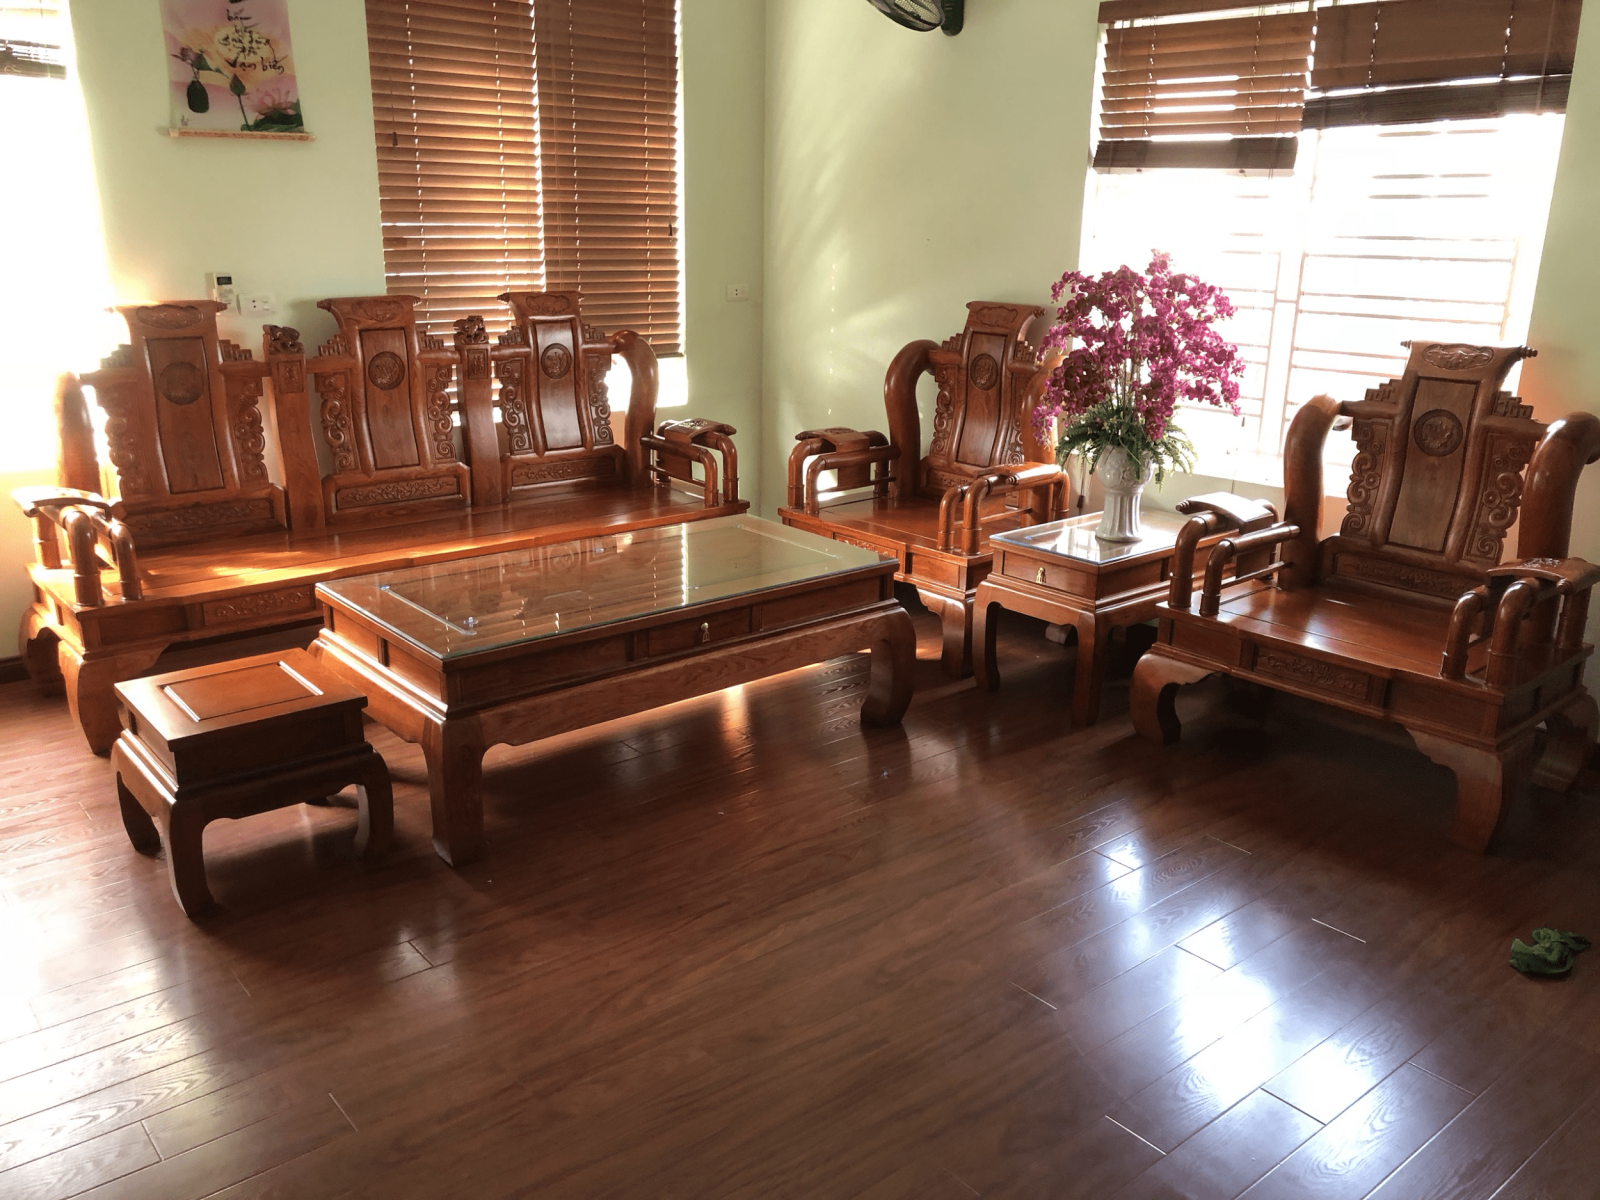 Bàn ghế gỗ hương - Với chất liệu gỗ hương sang trọng và bền bỉ, bộ bàn ghế đượm đà cổ điển này sẽ mang đến cho không gian của bạn một phong cách tinh tế và đẳng cấp. Hãy cùng thưởng thức tinh hoa nghệ thuật của một bộ bàn ghế gỗ hương đẹp tại hình ảnh liên quan.